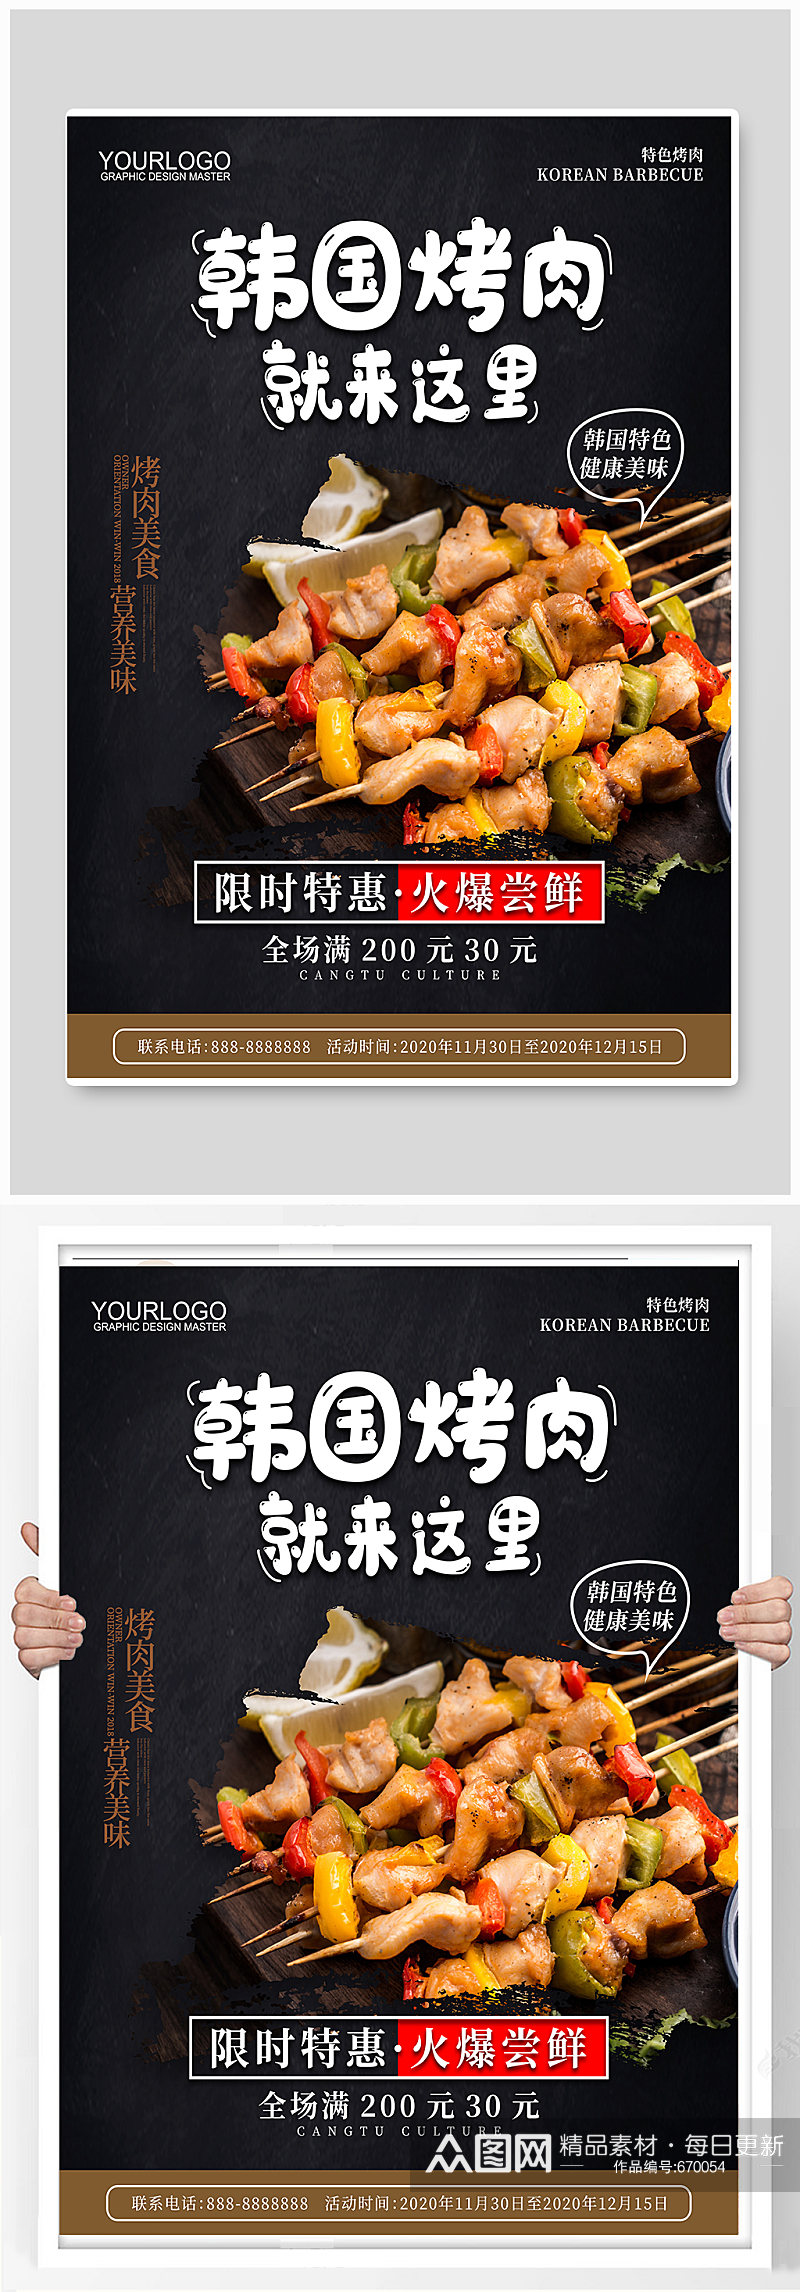 韩国烤肉宣传海报素材